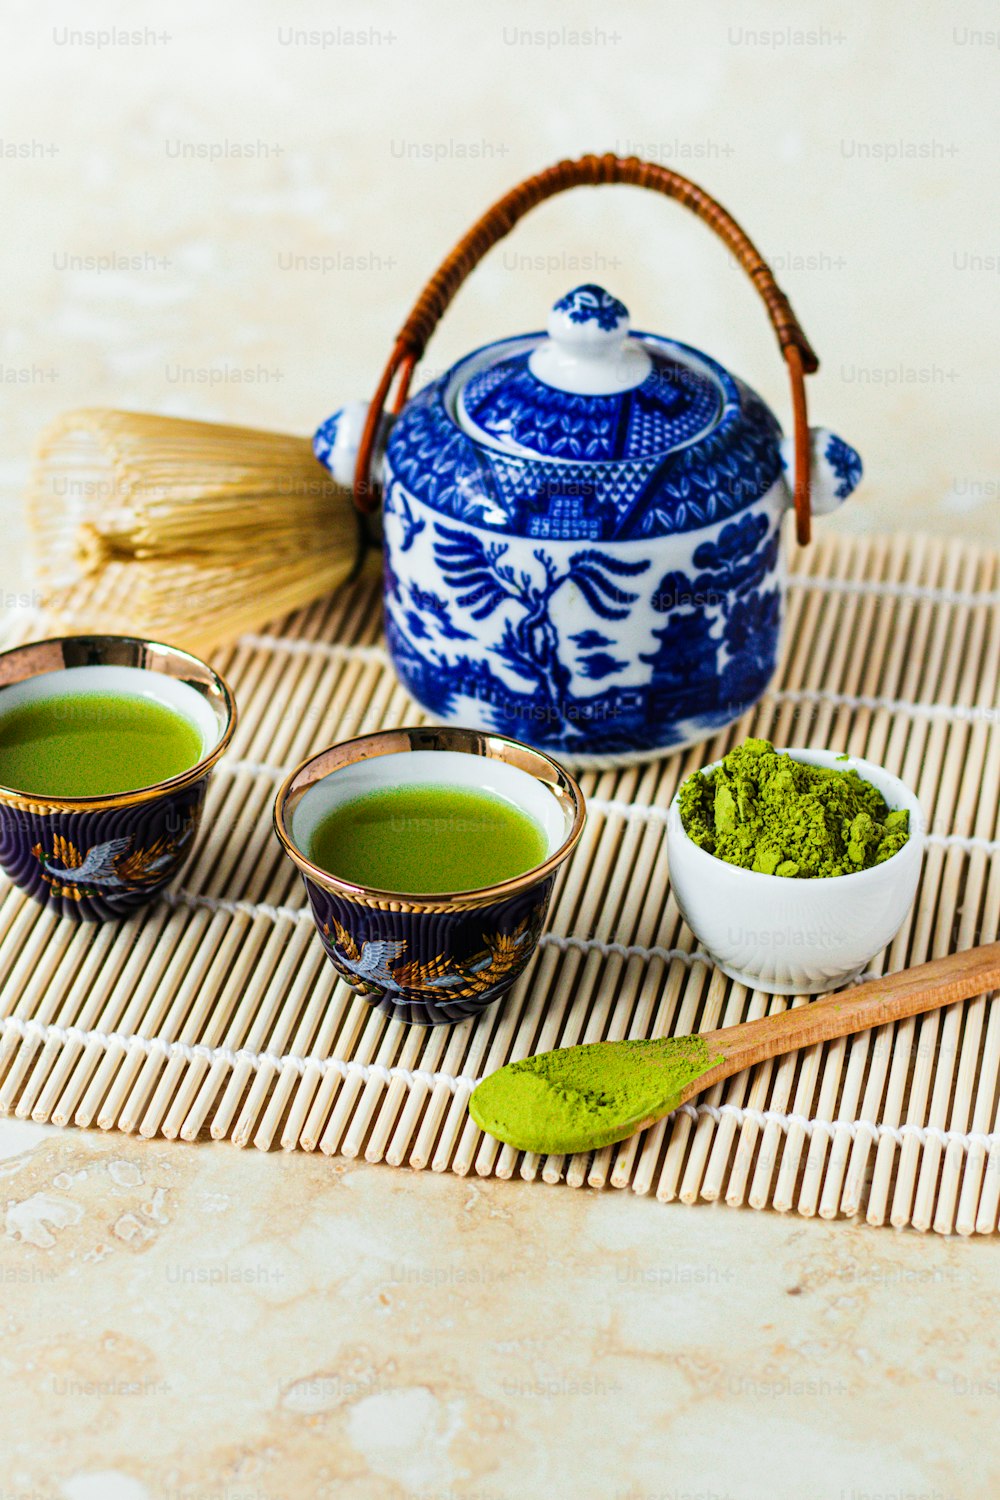 Deux bols de thé vert à côté d’une théière